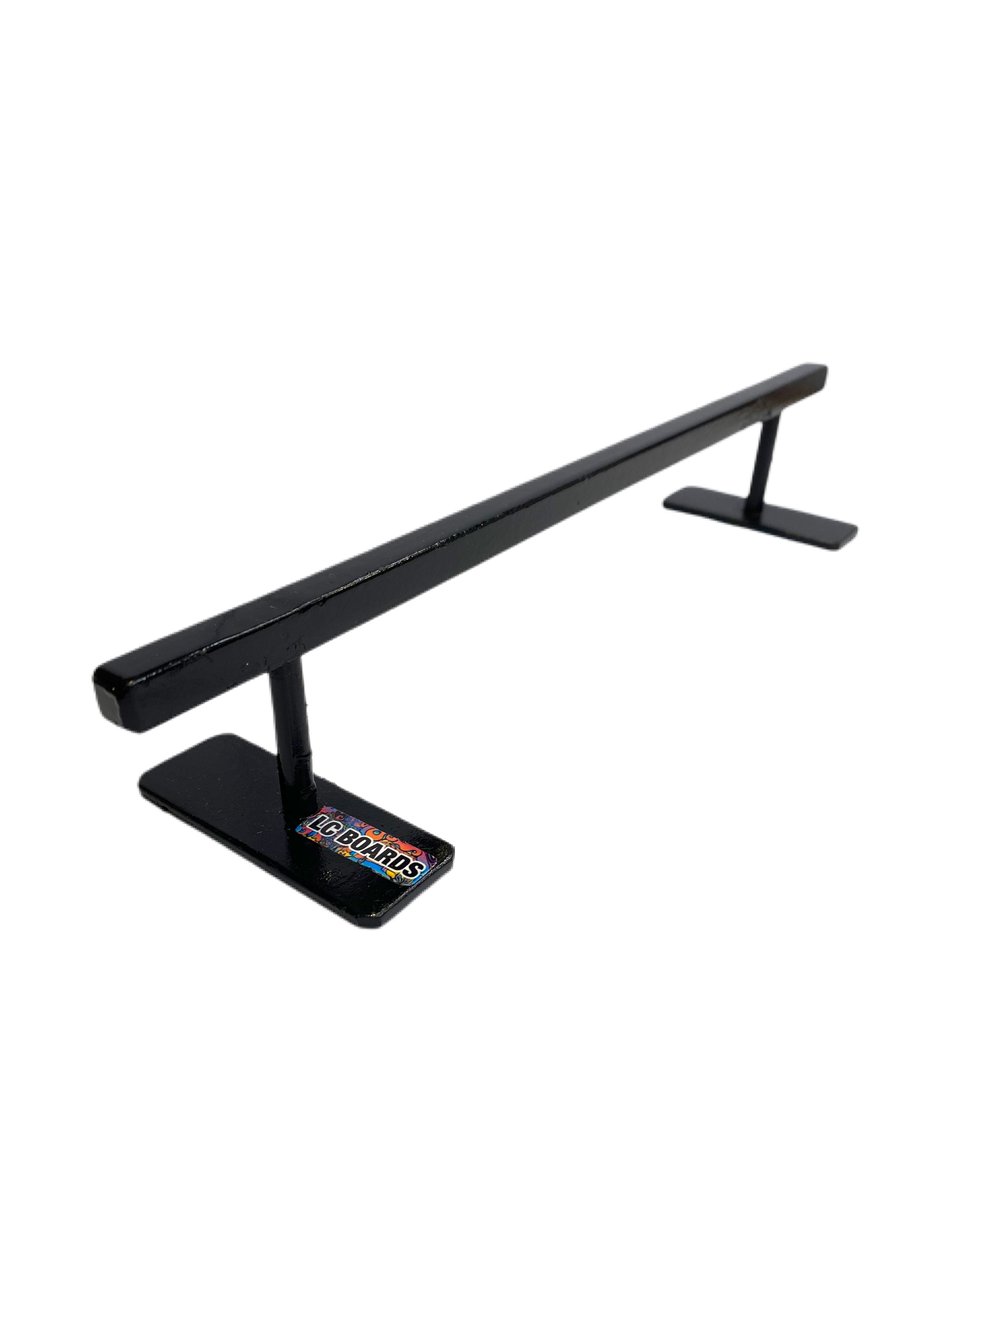 LC BOARDS Fingerboard Flat Bar Rail Steel Black